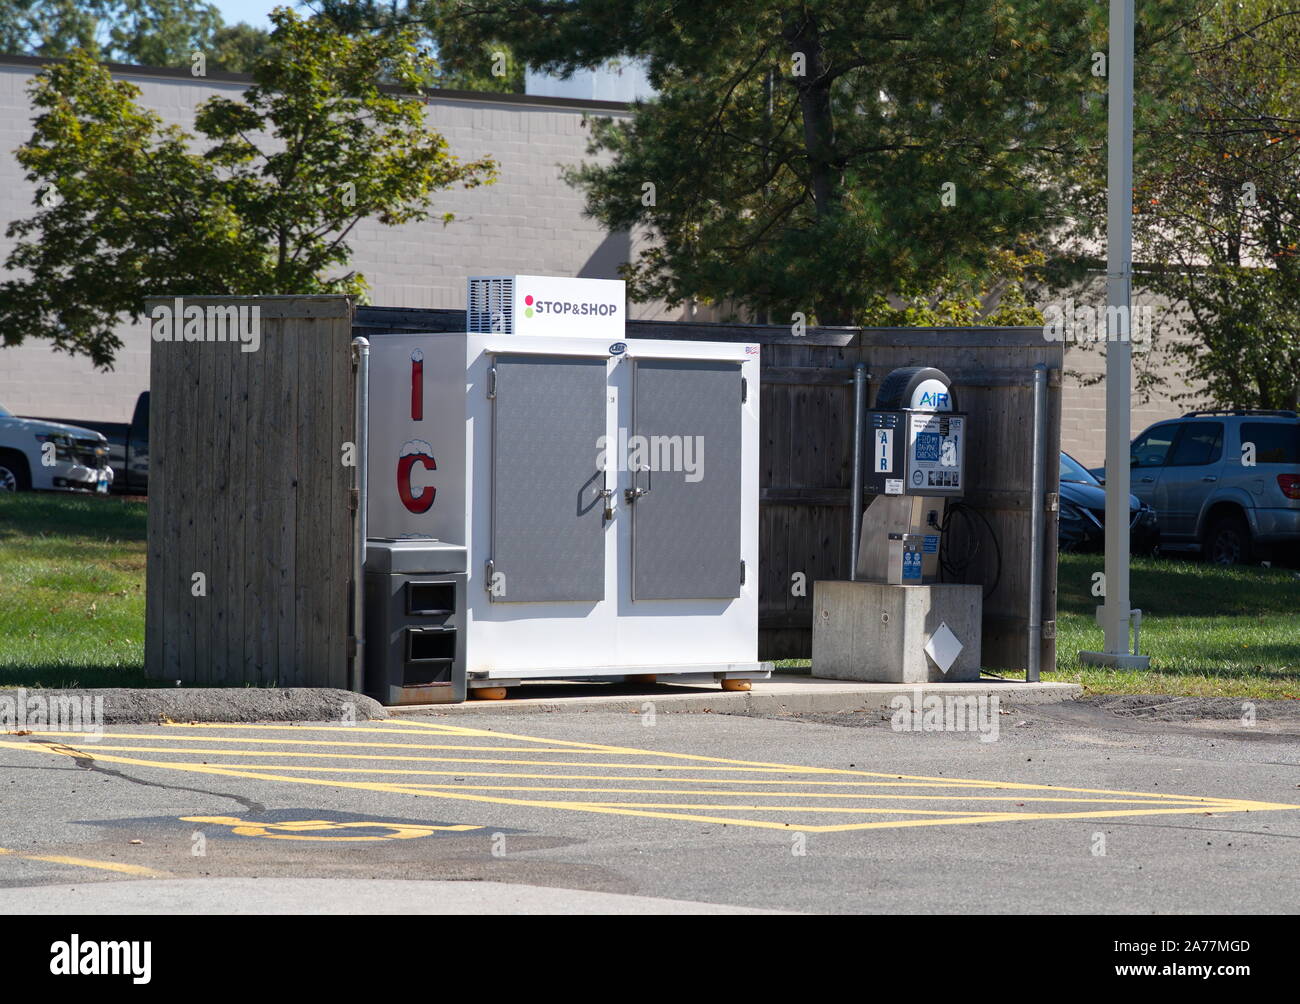 Cromwell, CT, Stati Uniti d'America. 5 ottobre 2019. Memorizzare la macchina per il ghiaccio e la manutenzione dei pneumatici pompa aria in corrispondenza di una stazione di gas. Foto Stock